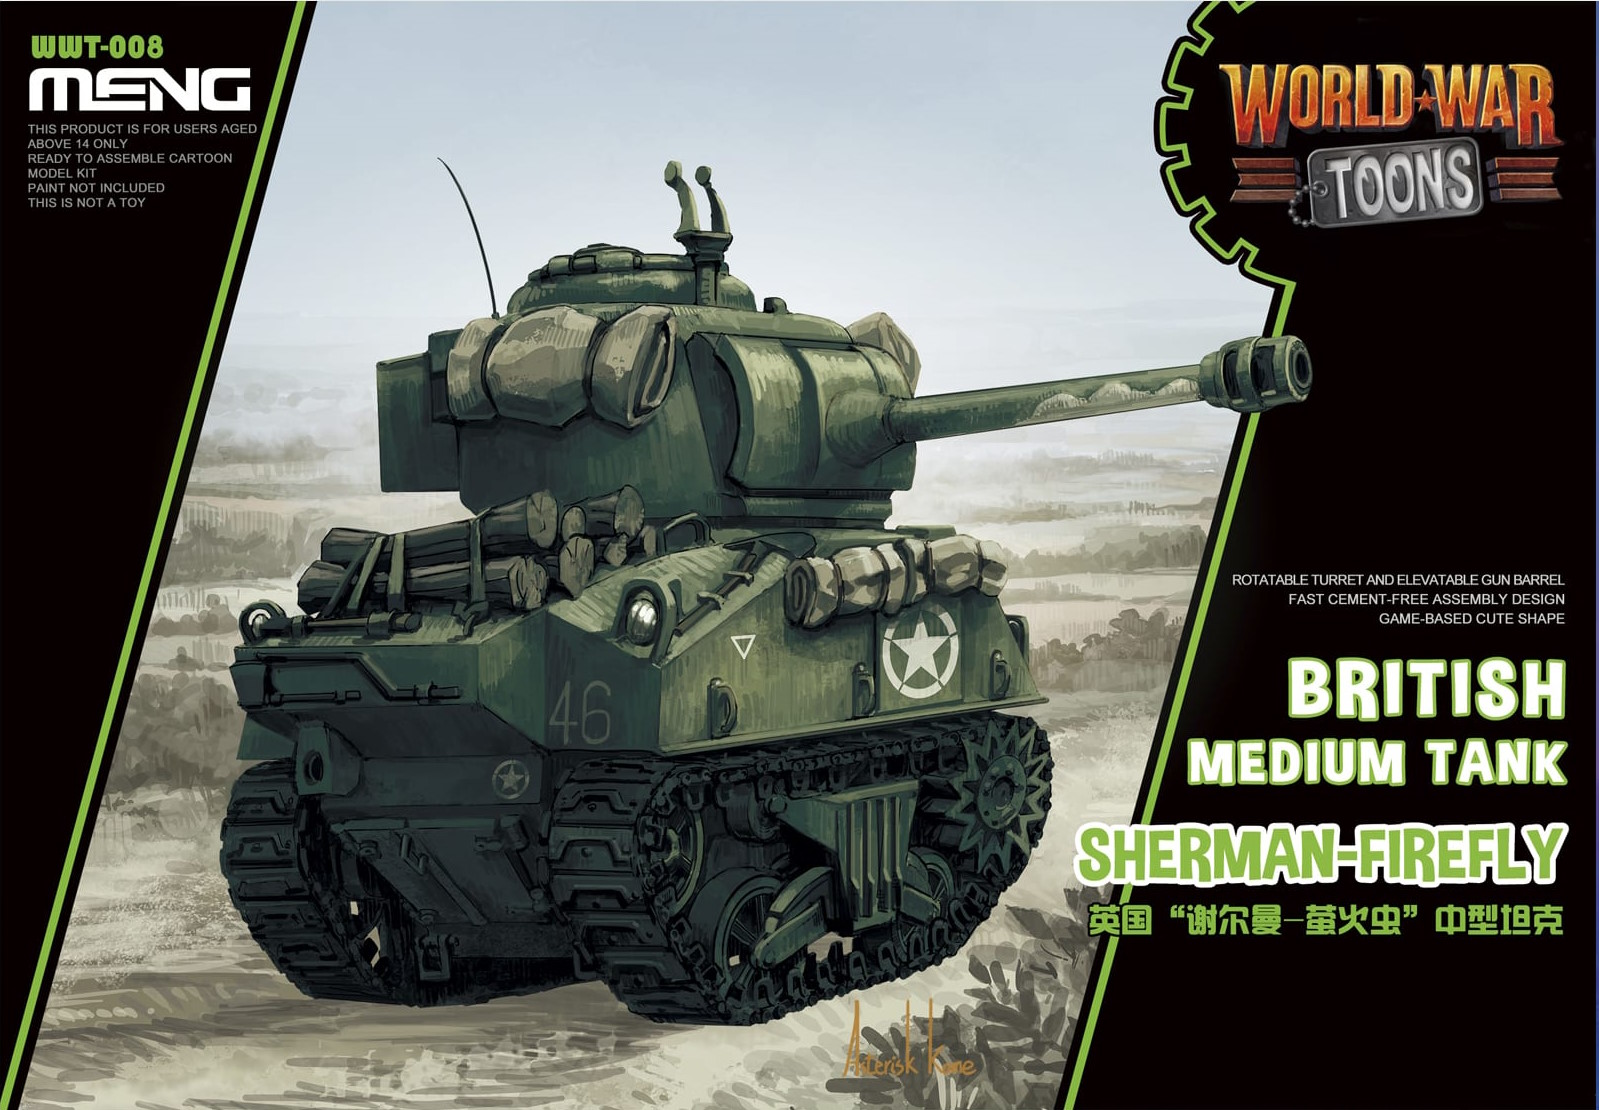 British Medium Tank - Sherman-Firefly